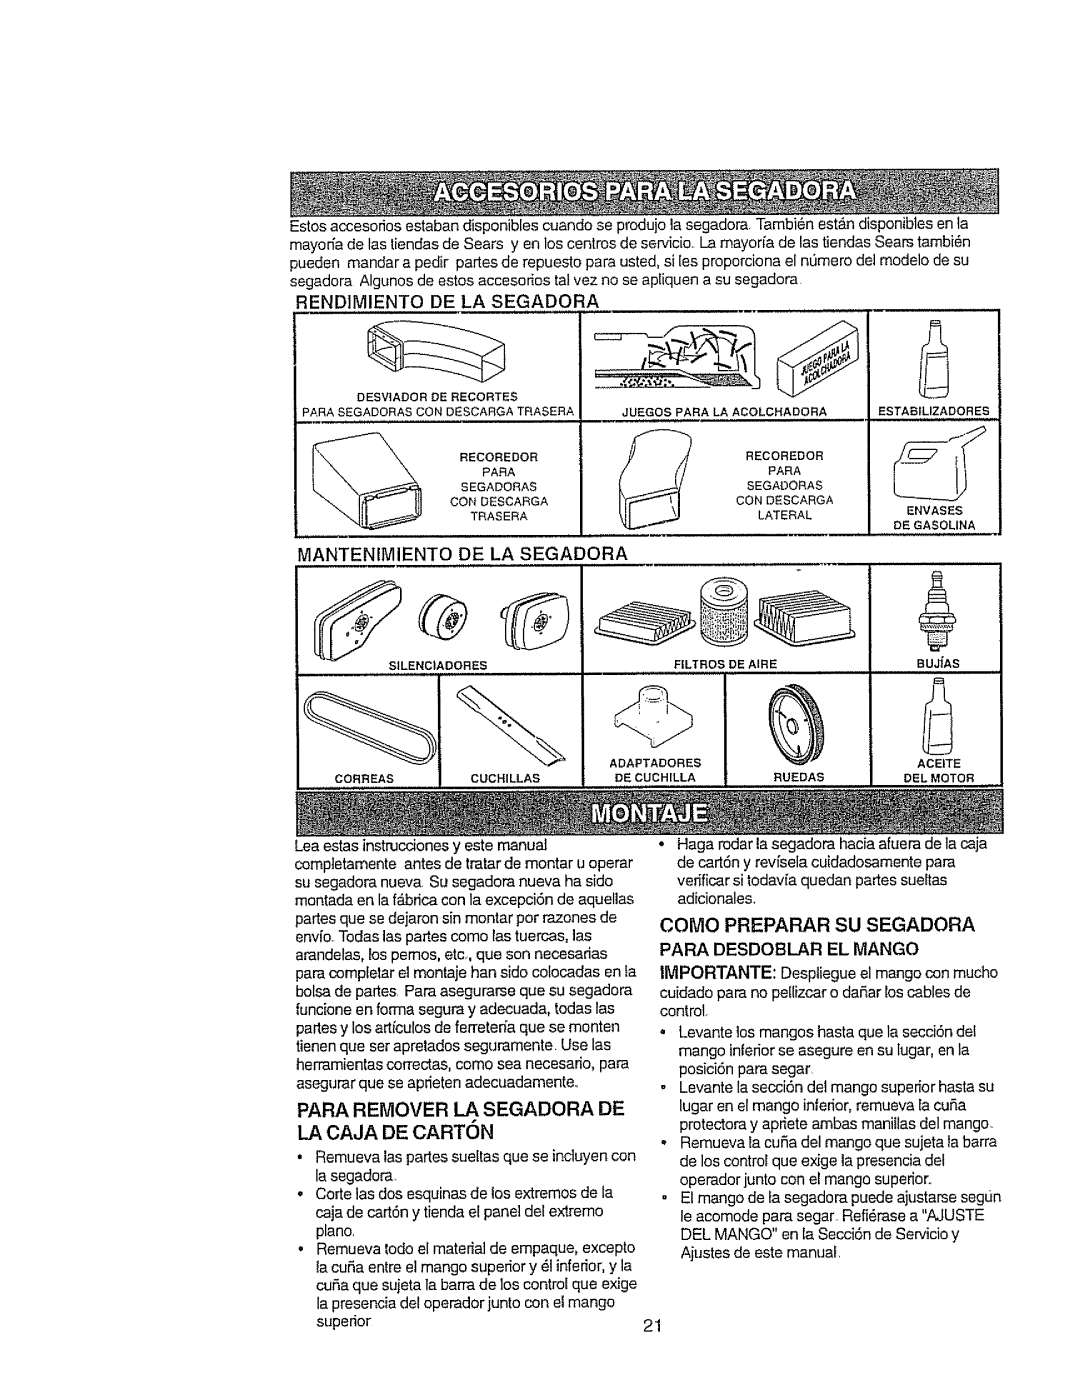 Craftsman 917.377592 manual La Caja De Carton, Mantenimiento De La Segadora 